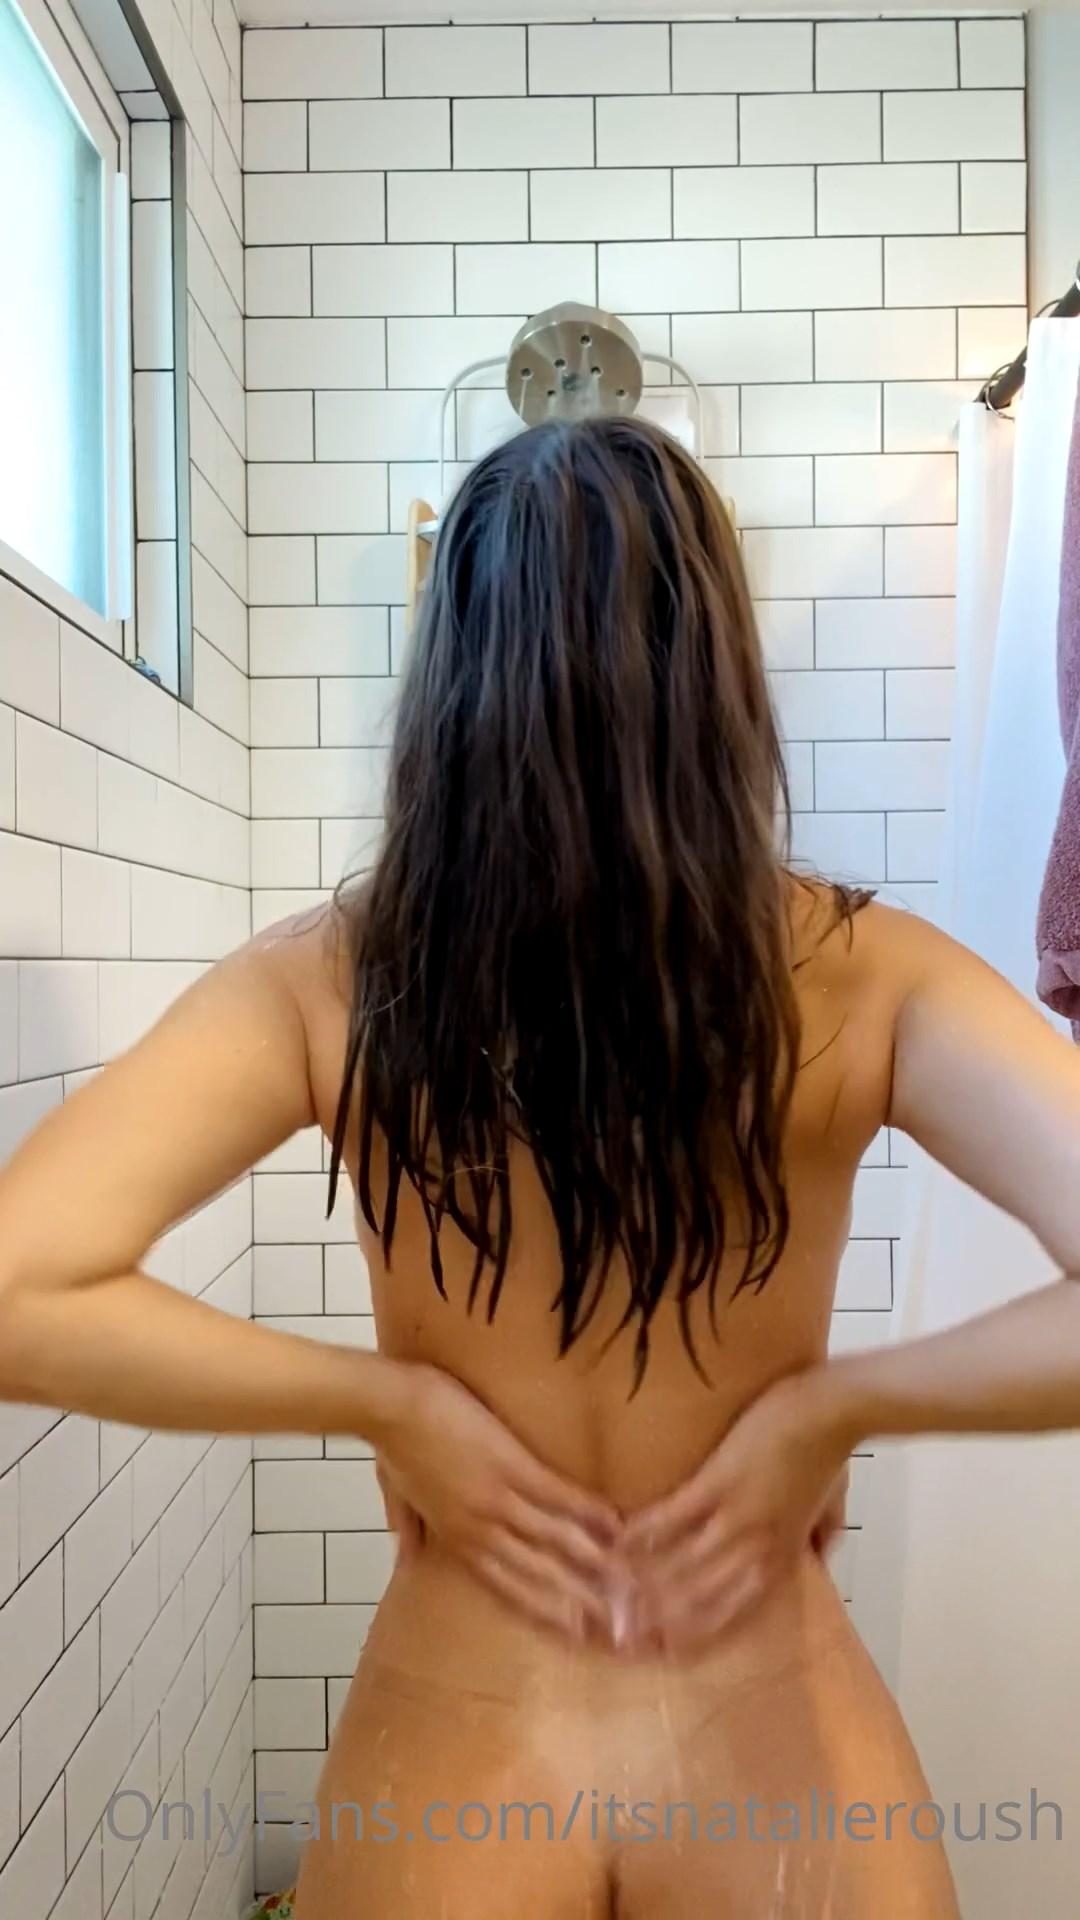 natalie roush nude shower onlyfans video leaked ZHLMMN